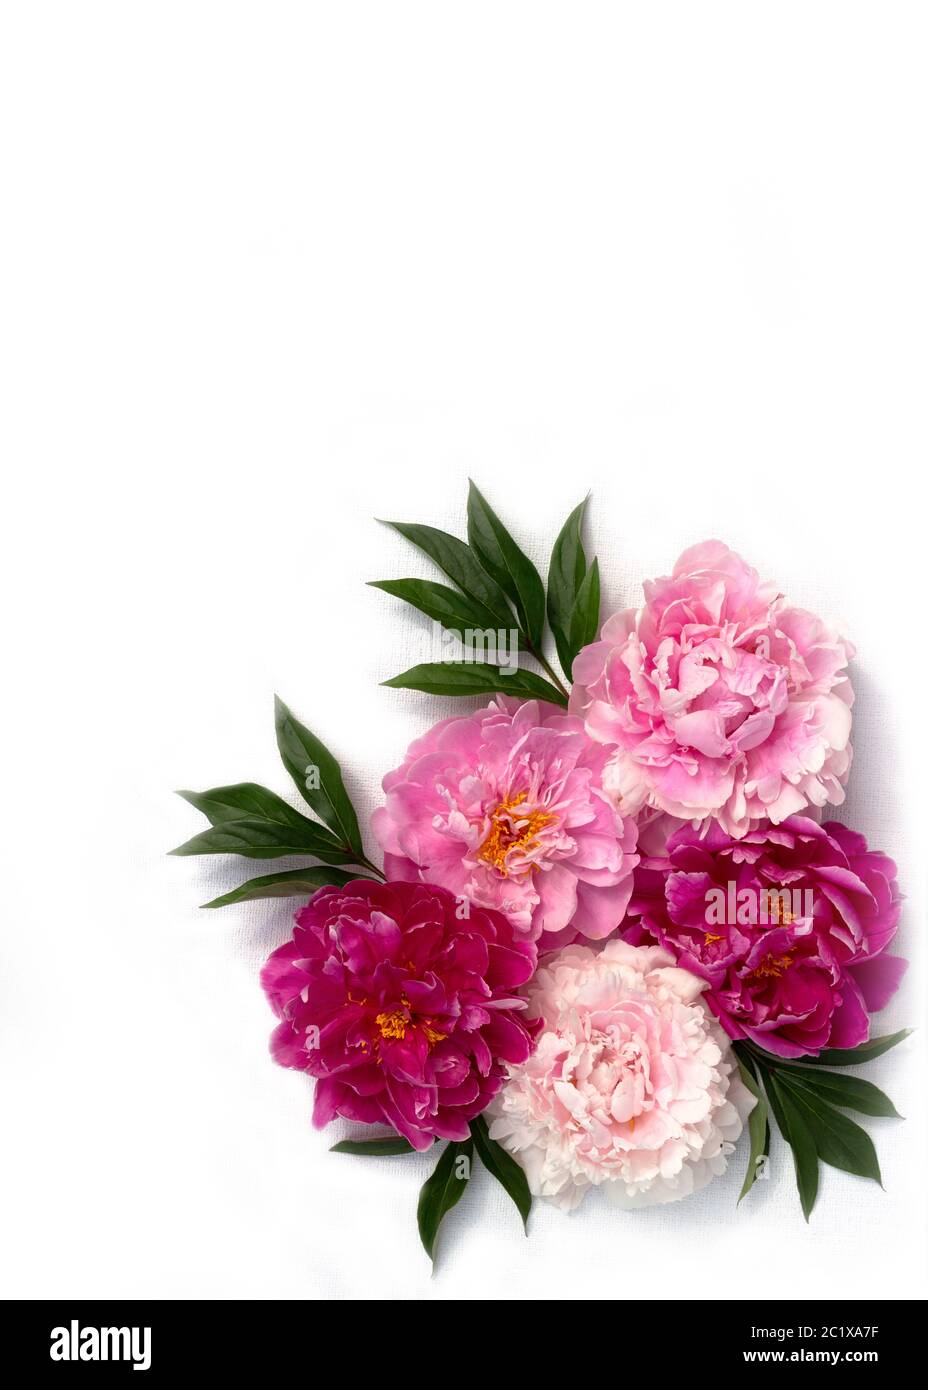 Borde de flor de flor de peonía rosa sobre fondo blanco. Vista superior, plano. Textura de la flor de peony. Foto de stock